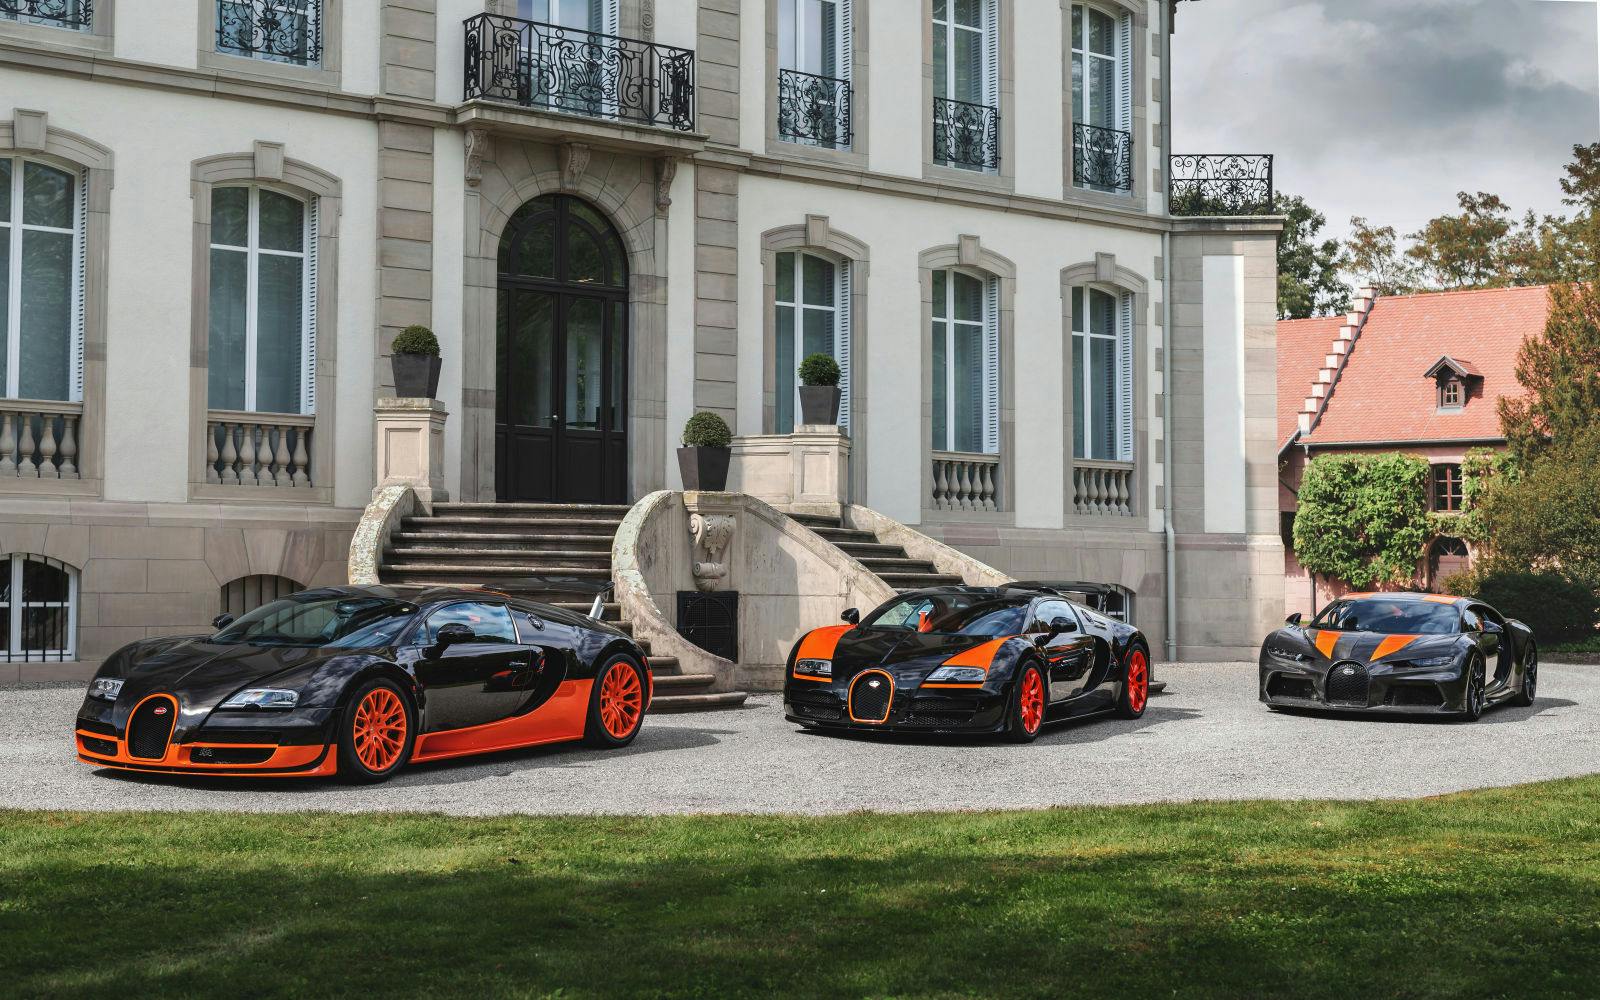 Bugattis Rekordfahrzeuge der modernen Ära in chronologischer Abfolge: Veyron 16.4 Super Sport (2010), Veyron 16.4 Grand Sport Vitesse (2013), Chiron Super Sport 300+ (2019).